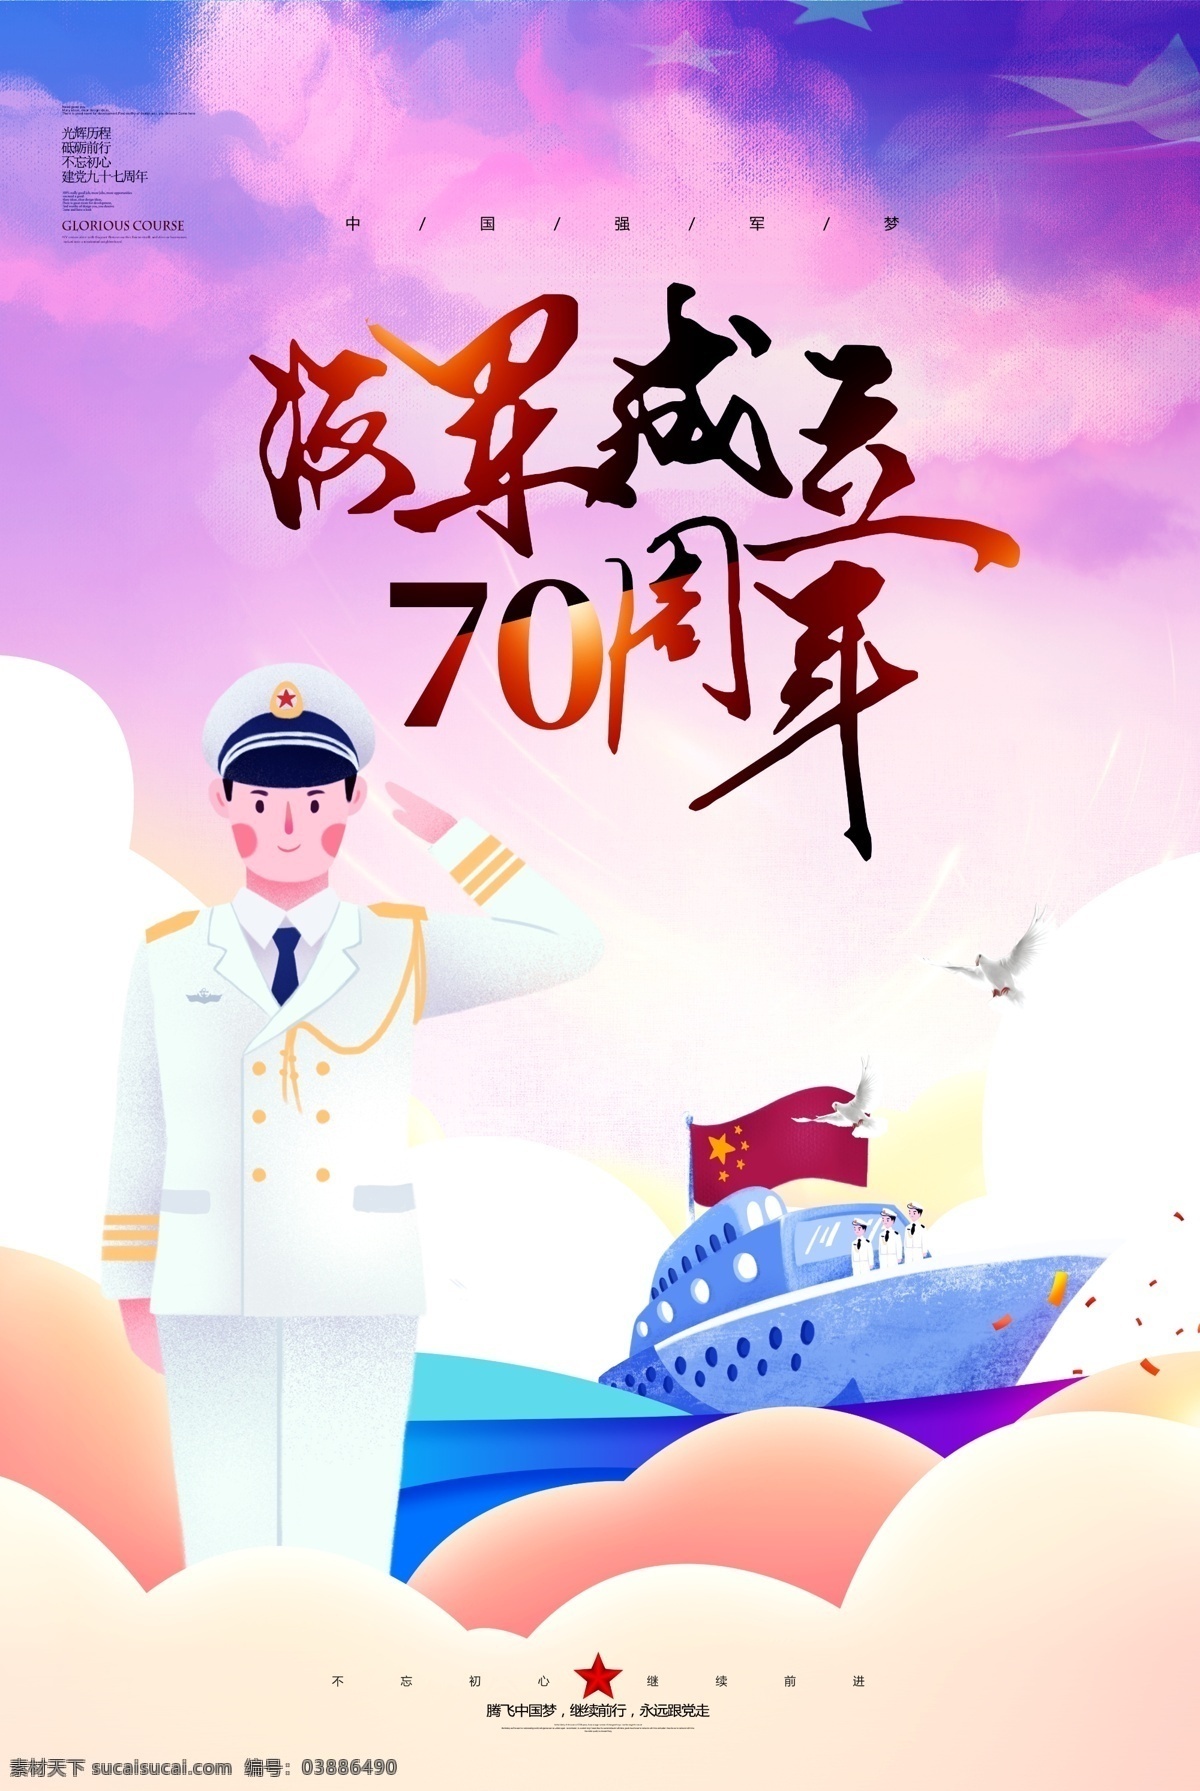 创意 大气 海军 成立 周年 海报 军事 70周年 军舰 军人 海岛 海 大海 海边 中国 国旗 轮船